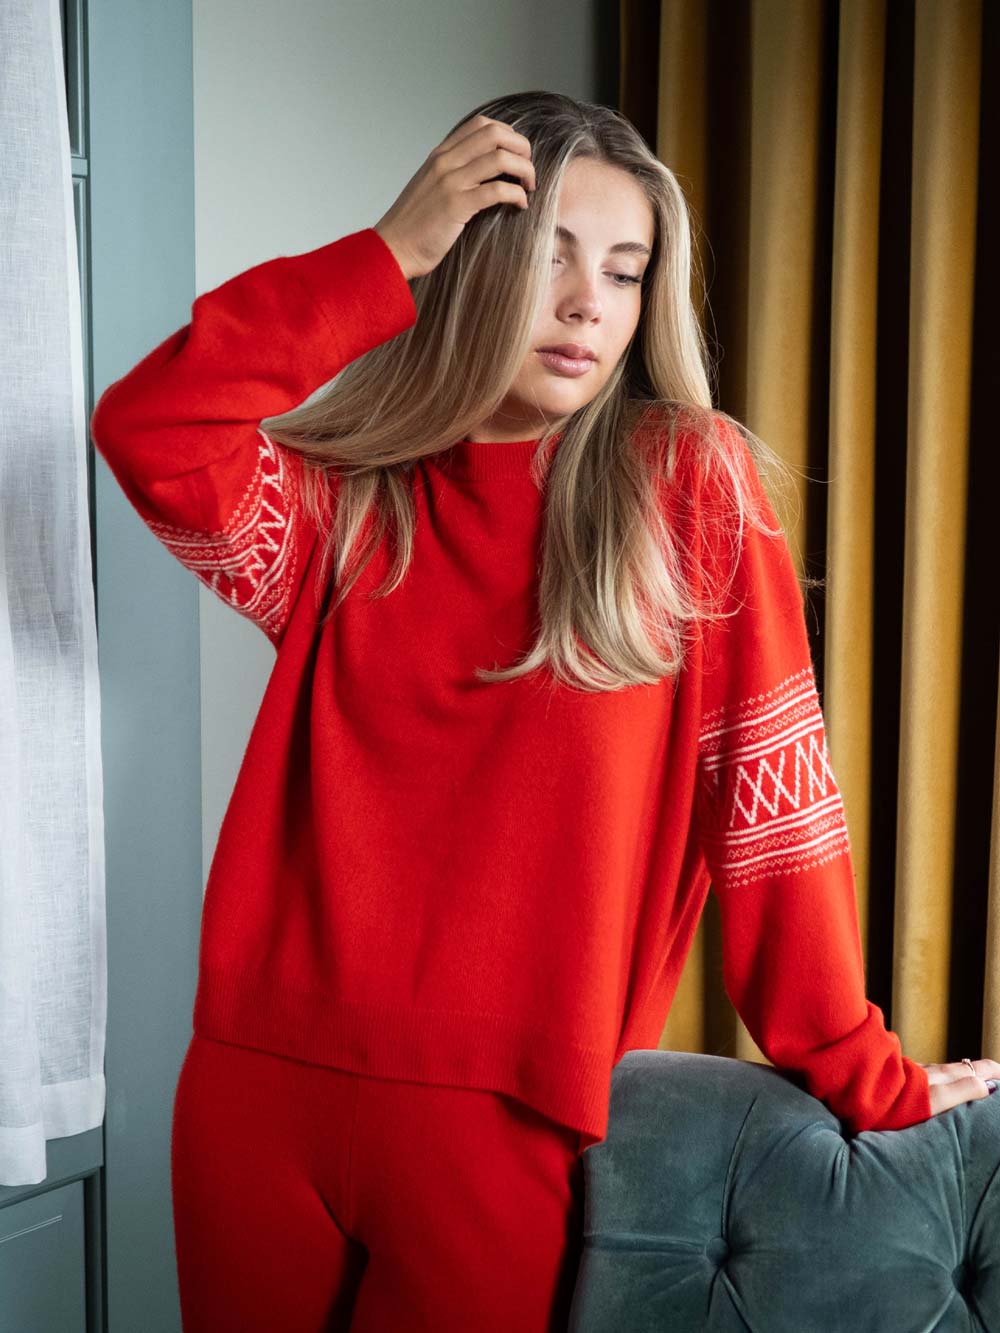 Selje Sweater Women Red